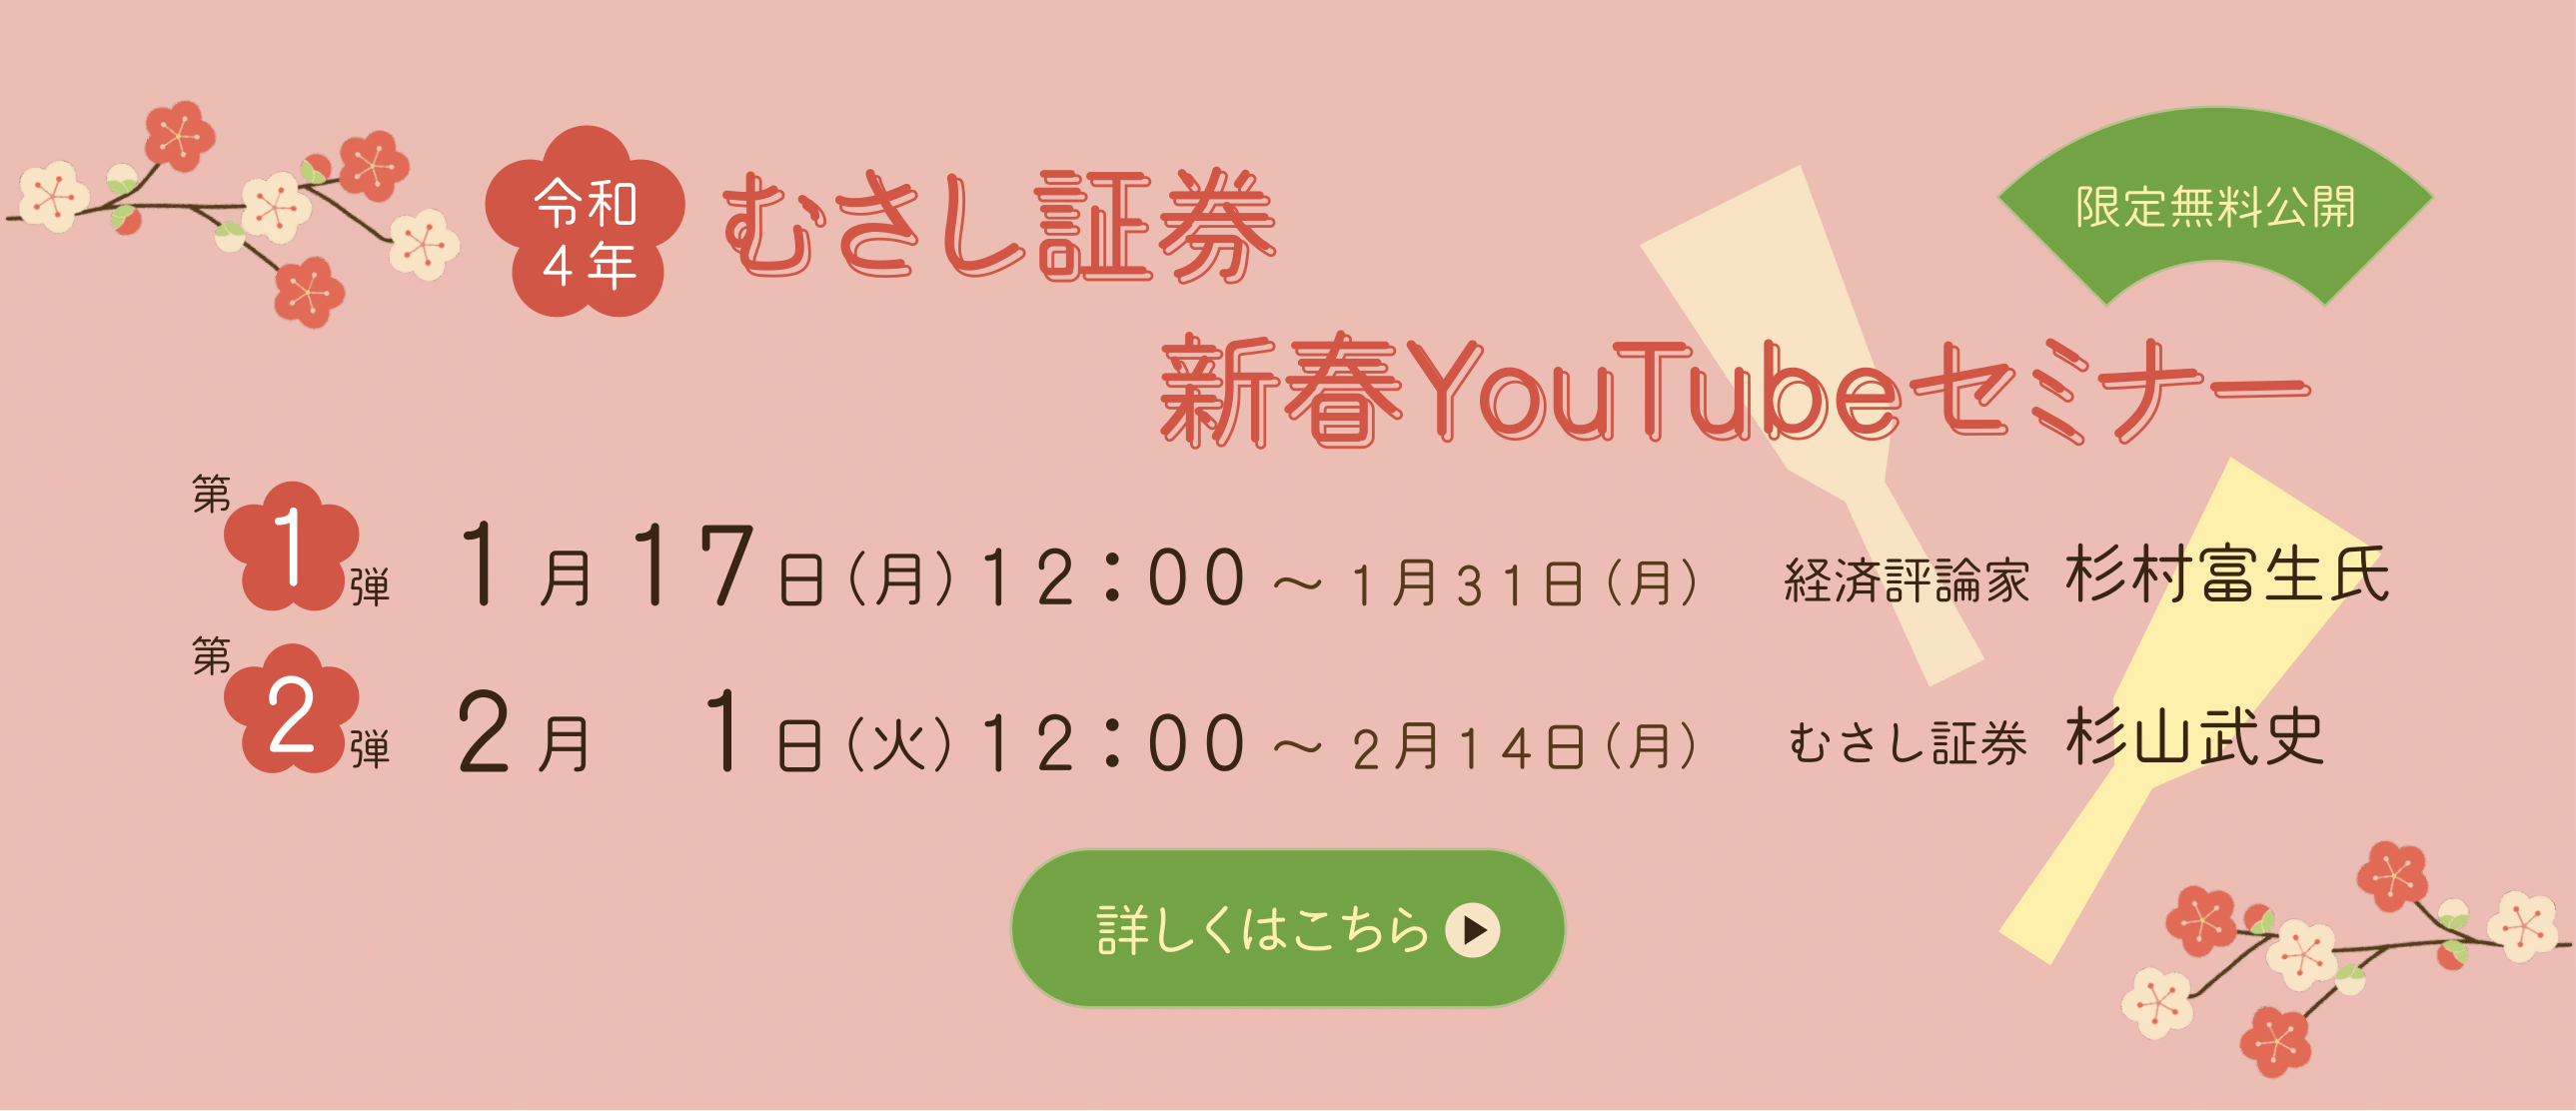 新春YouTubeセミナー